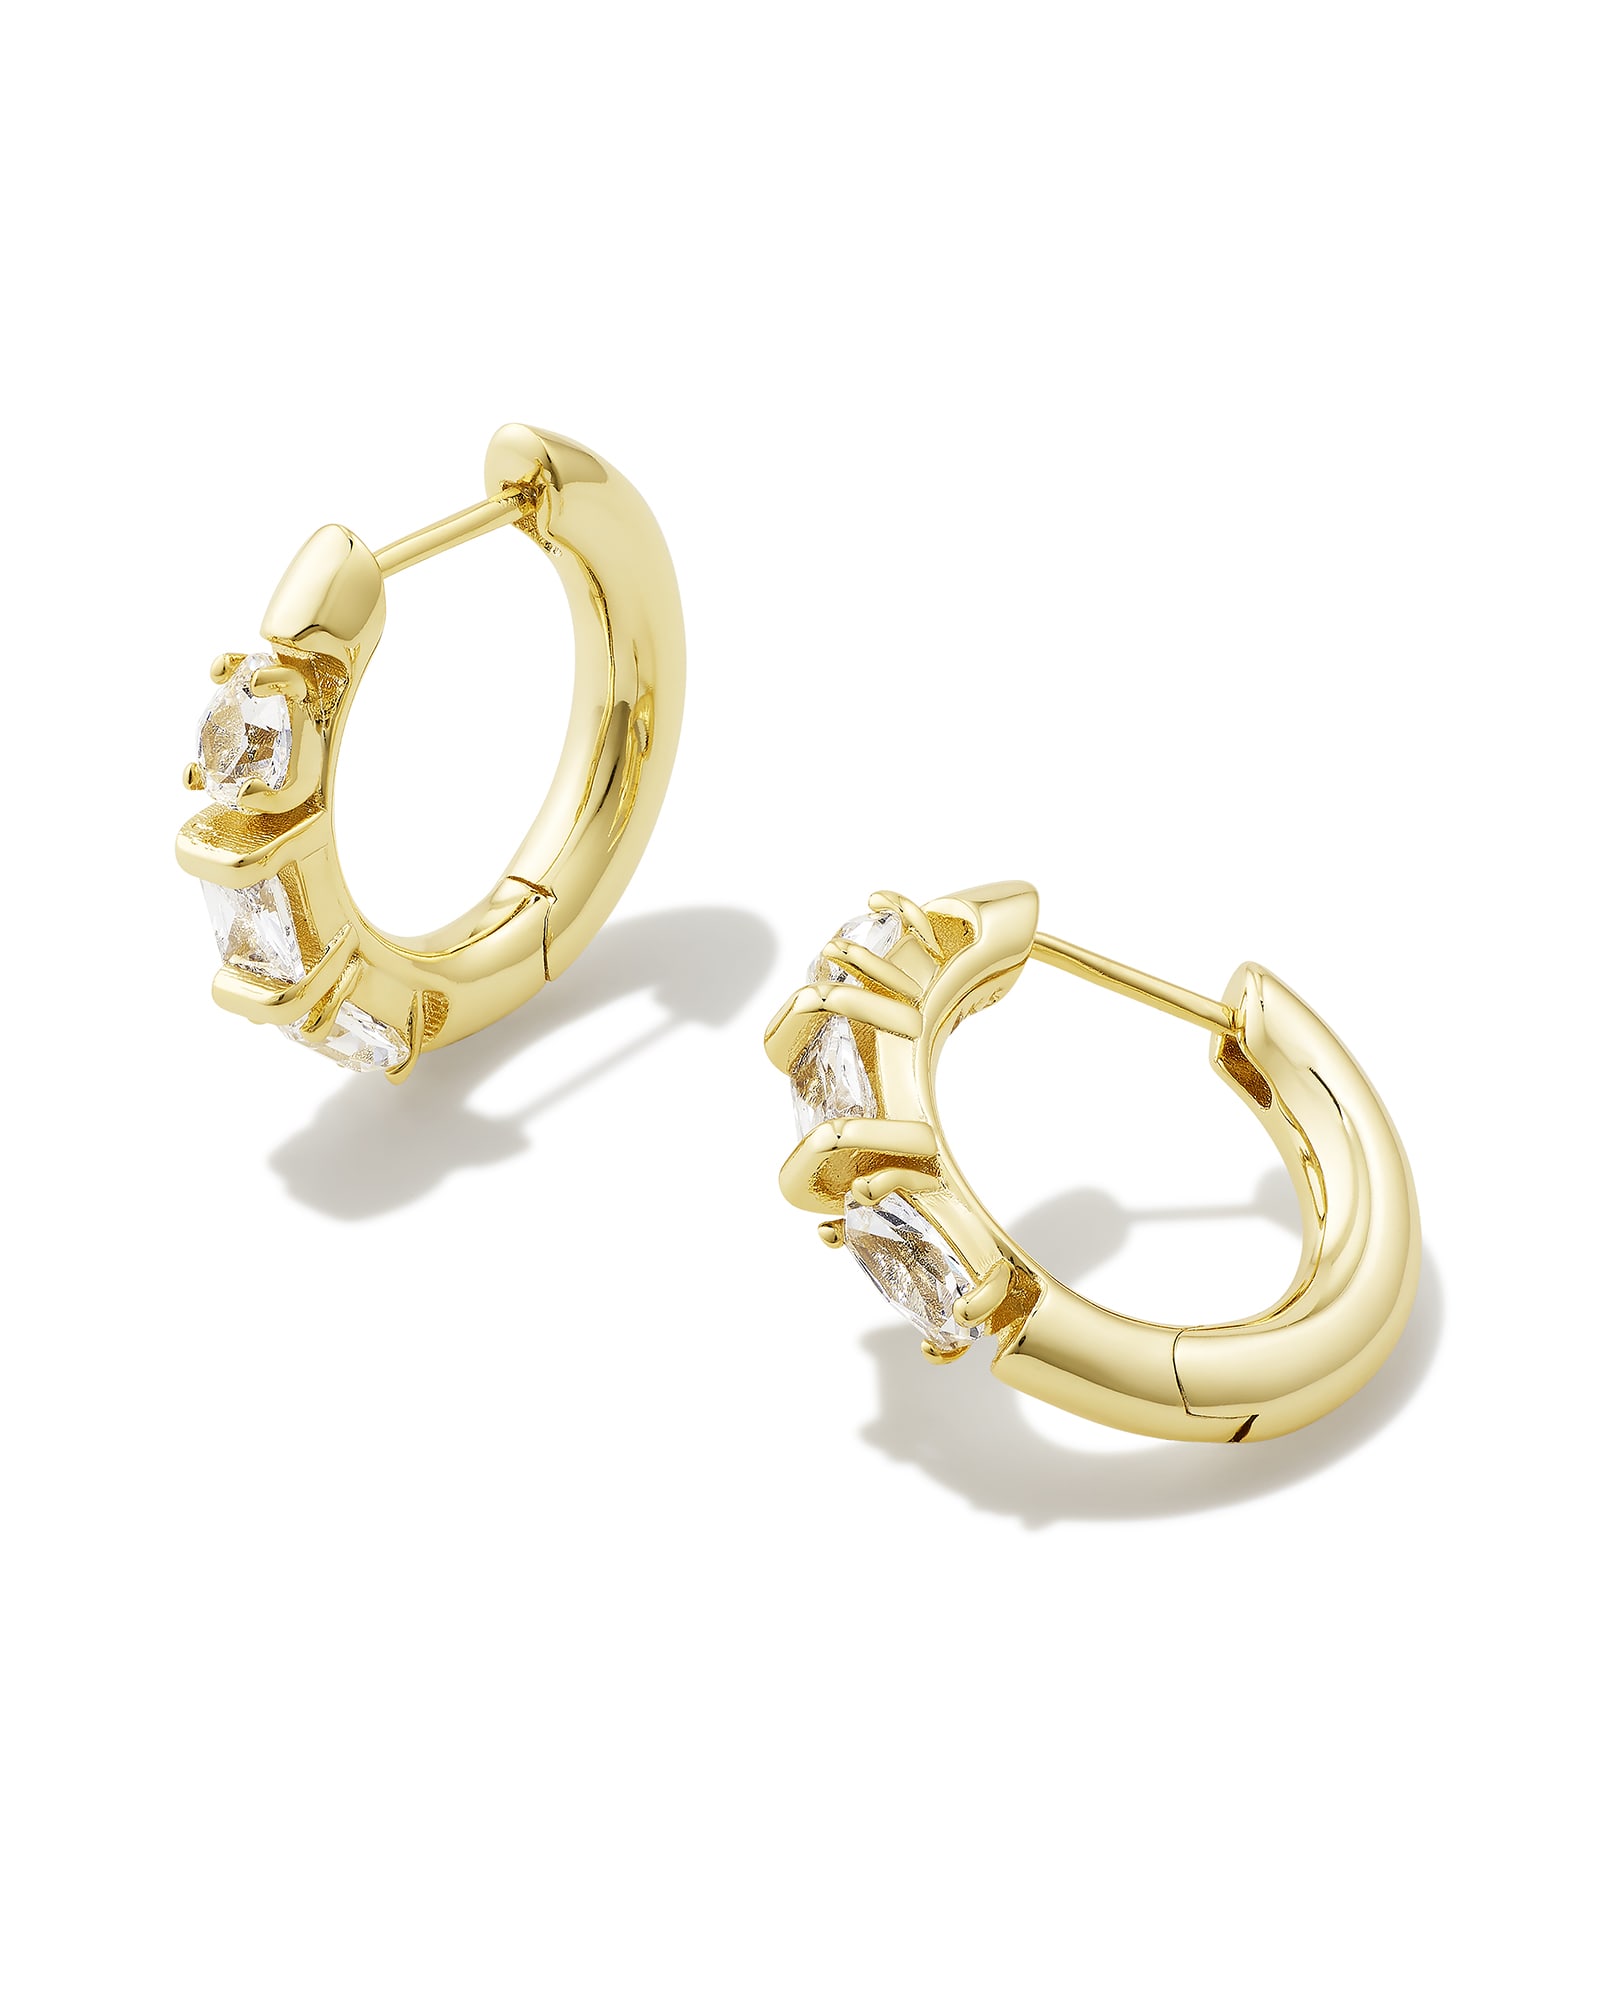 Mayel Gold Huggie Earrings in White Crystal | Kendra Scott